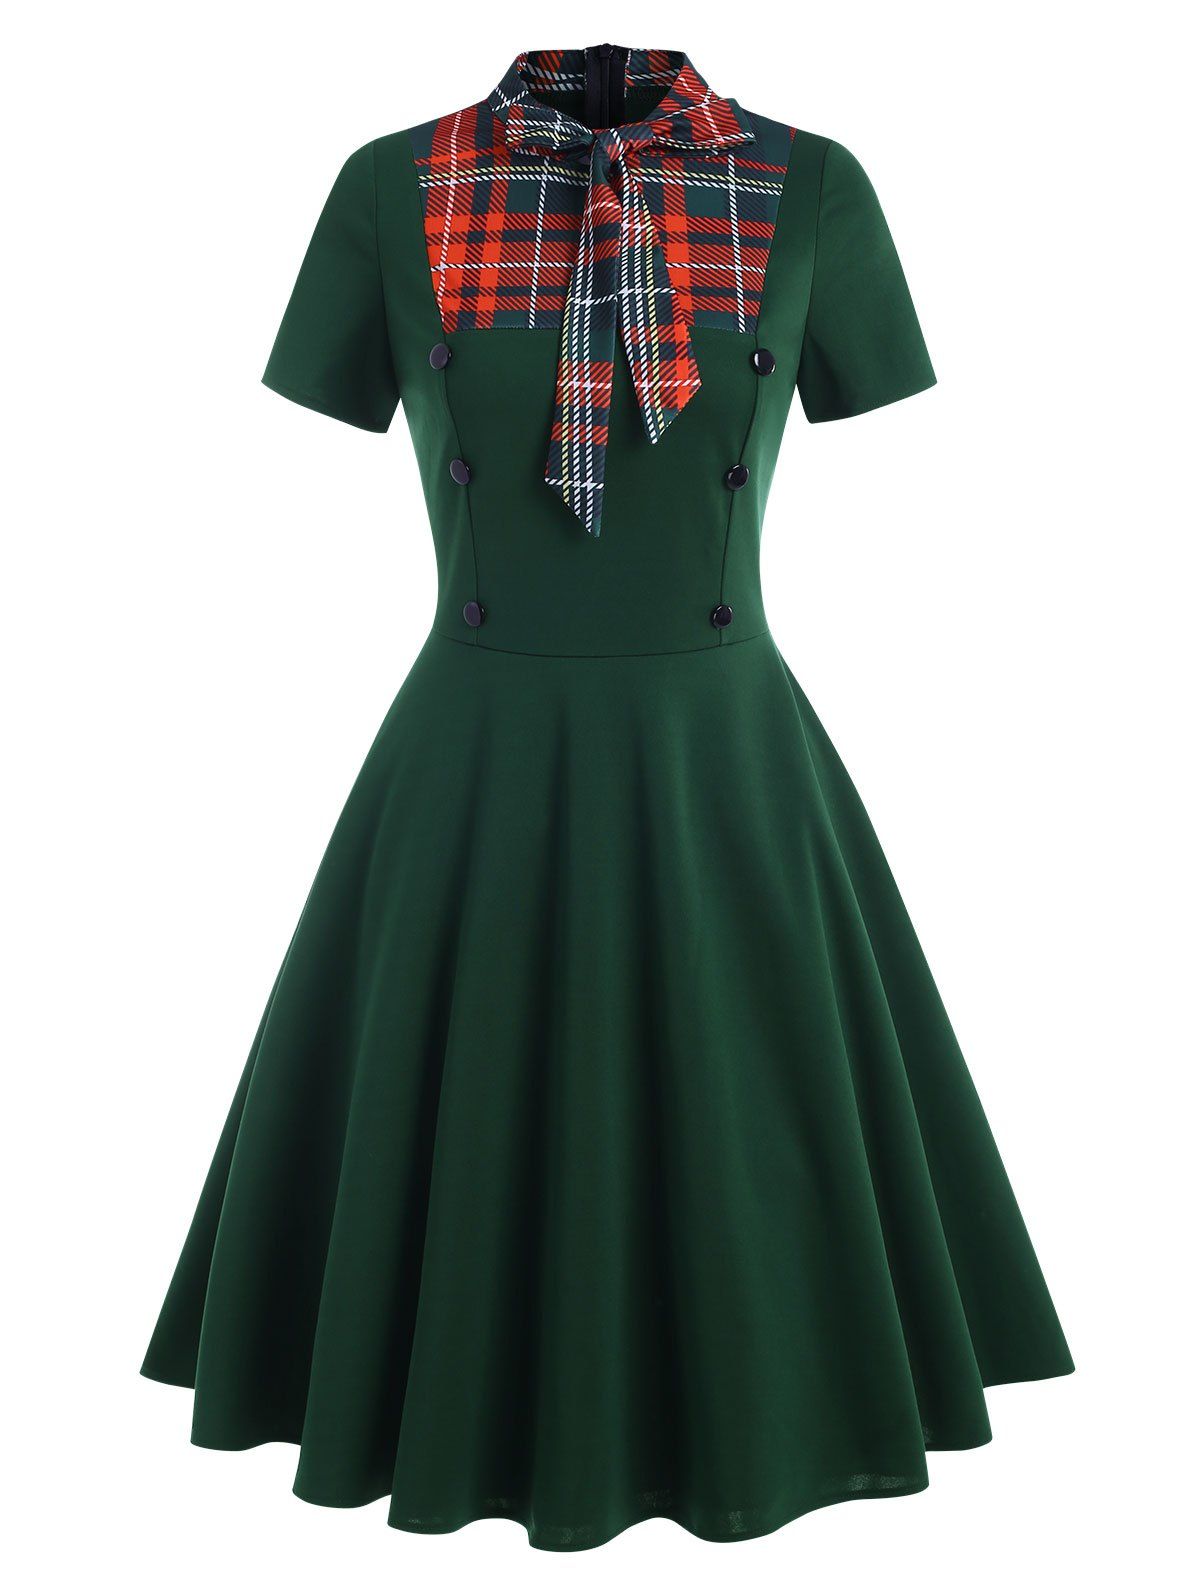 Vintage Dress Plaid Print Insert A Line Dress Bowknot Tie Collar Dress Mock Button Short Sleeve Dress - DEEP GREEN S